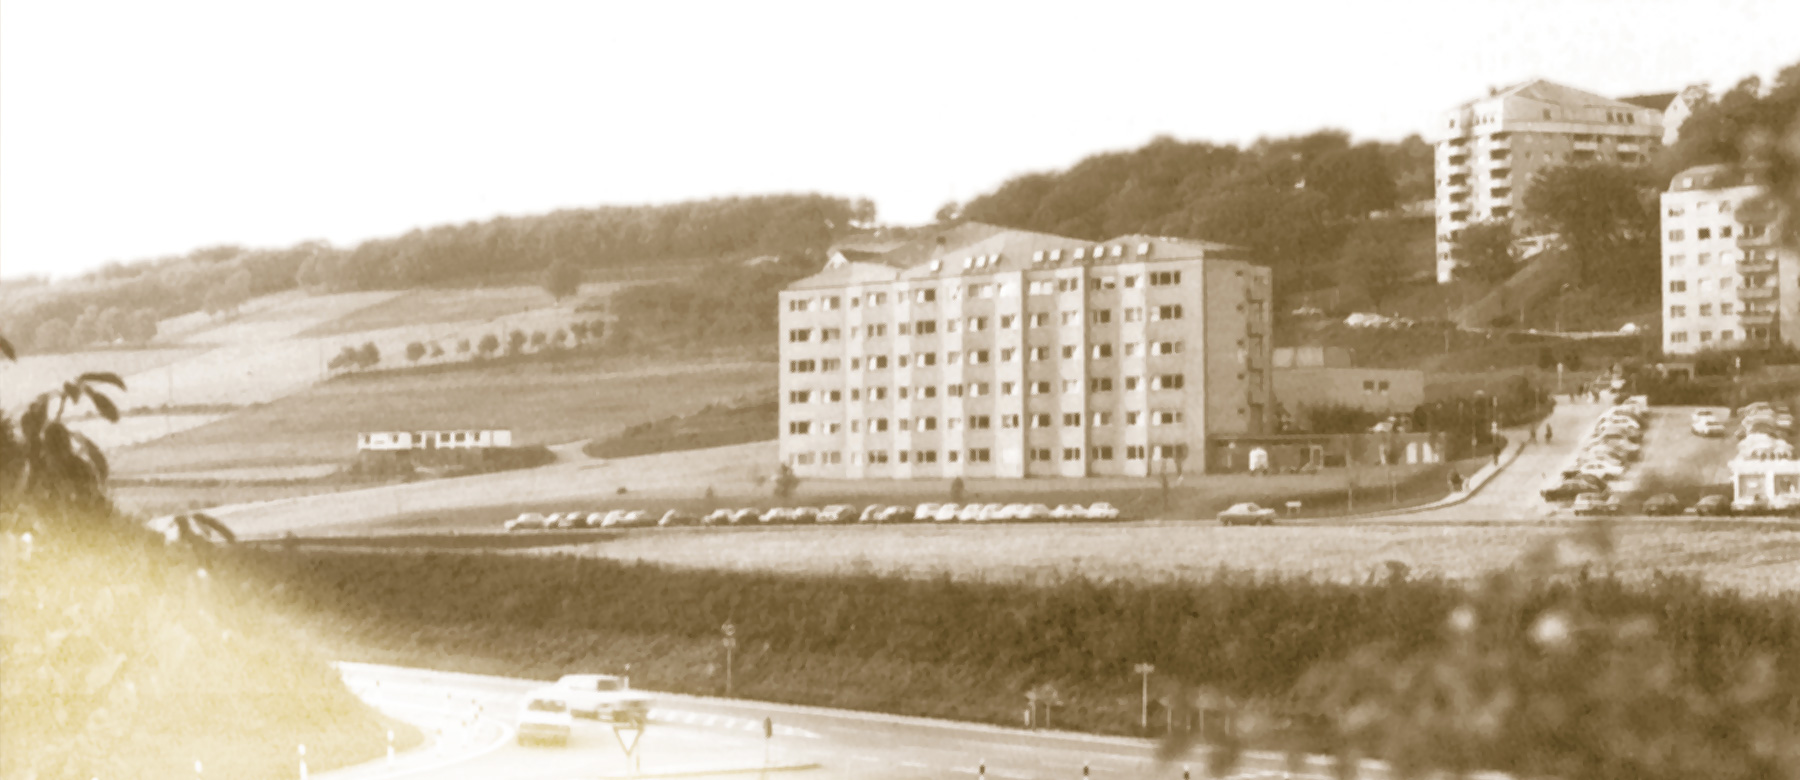 Historisches Foto des Gemeinschaftskrankenhaus Herdecke.